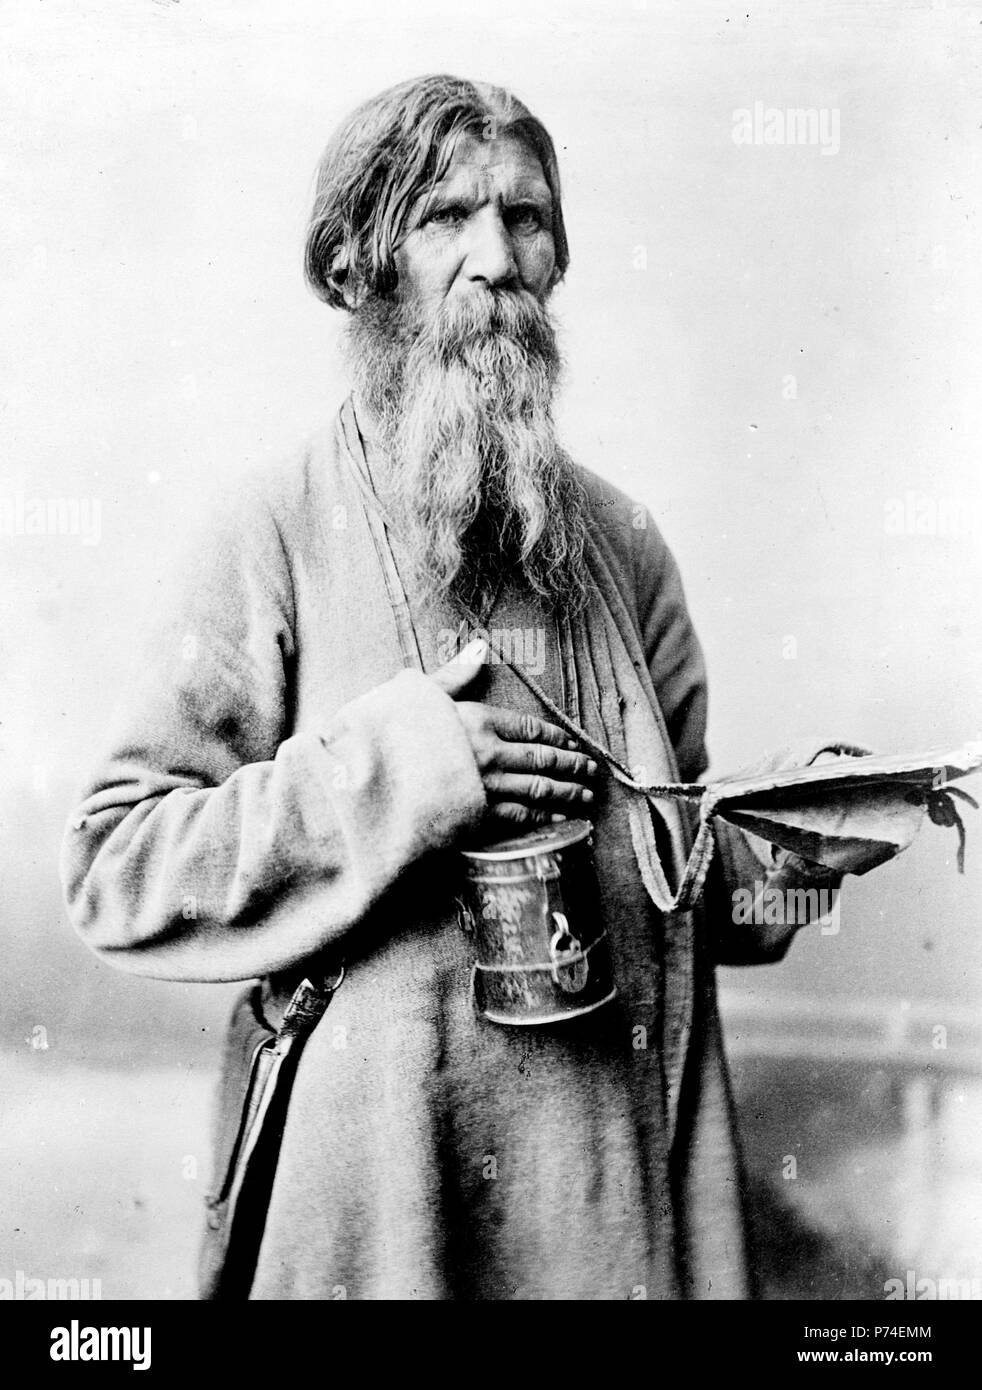 Hombre Barbado, de pie, de tres cuartos de longitud, con una caja con una ranura para depositar dinero, Rusia. 1880-1924 Foto de stock